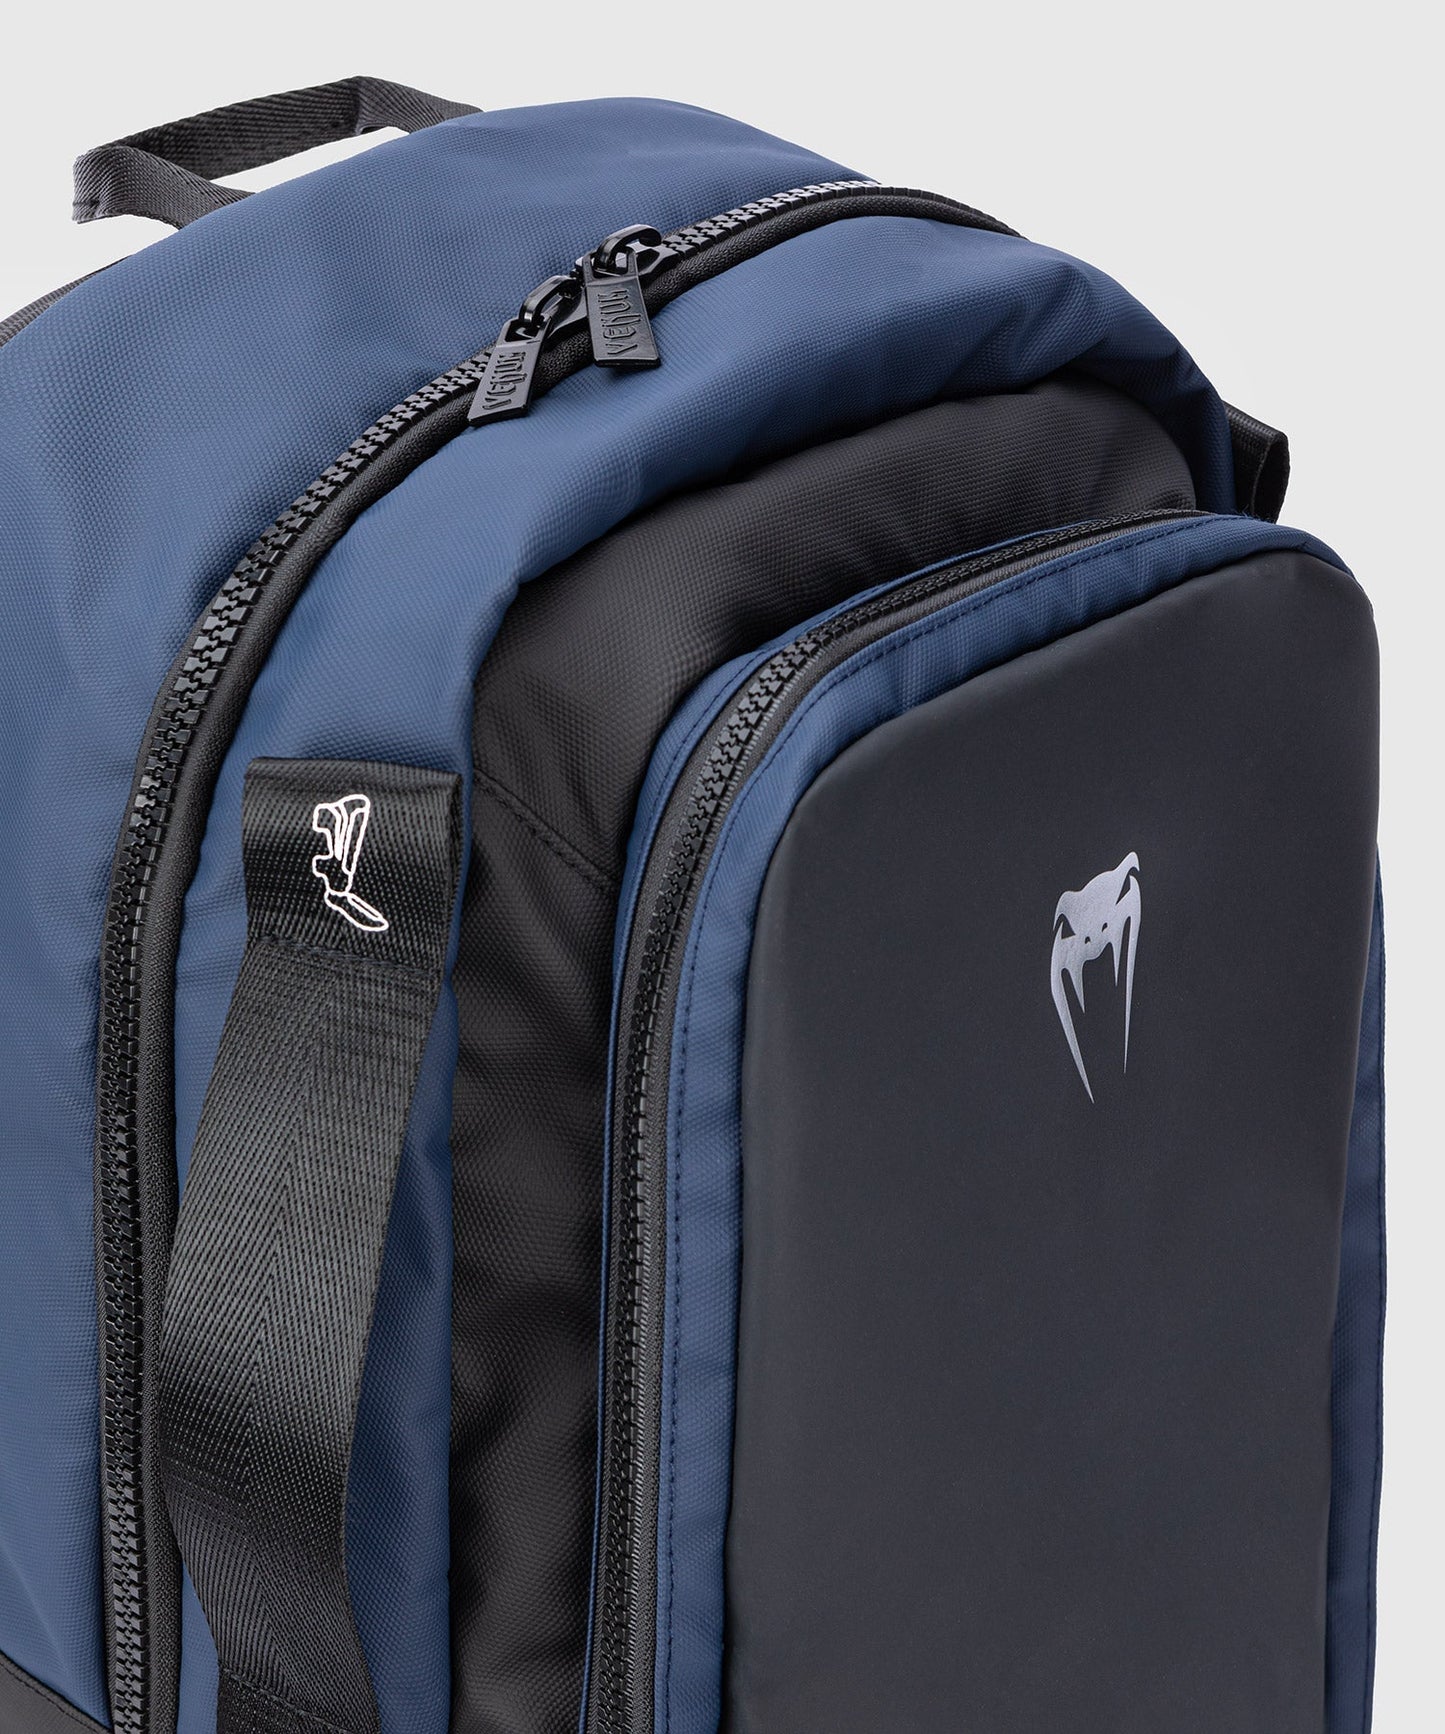 Venum Evo 2 Backpack - Schwarz/Blau